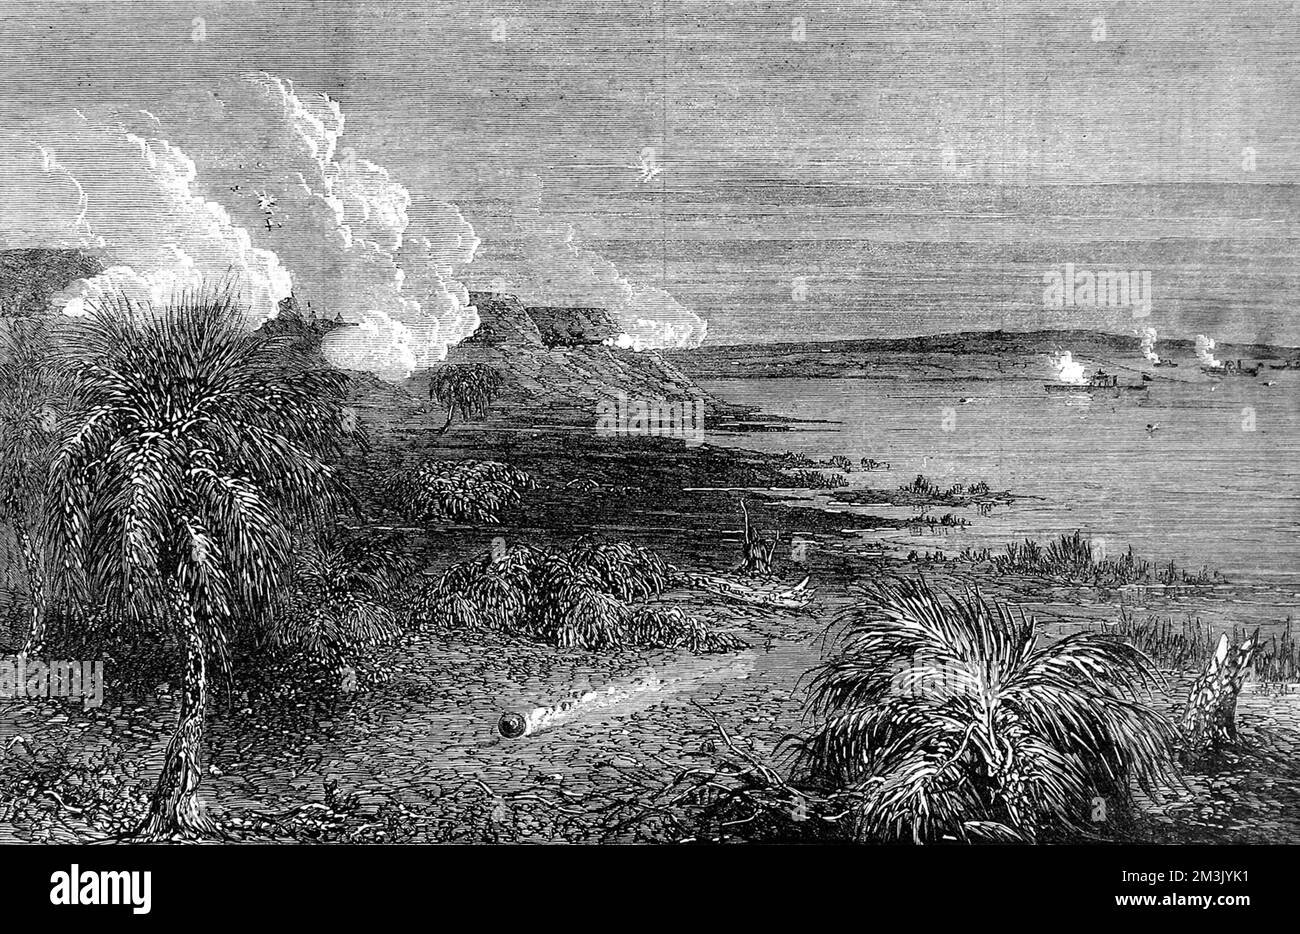 Bundesgewehrboote attackieren Fort McAllister, was den wachsenden Erfolg der Unionisten Navy unter Flaggenoffizier Farragut widerspiegelt. Datum: 1863 Stockfoto